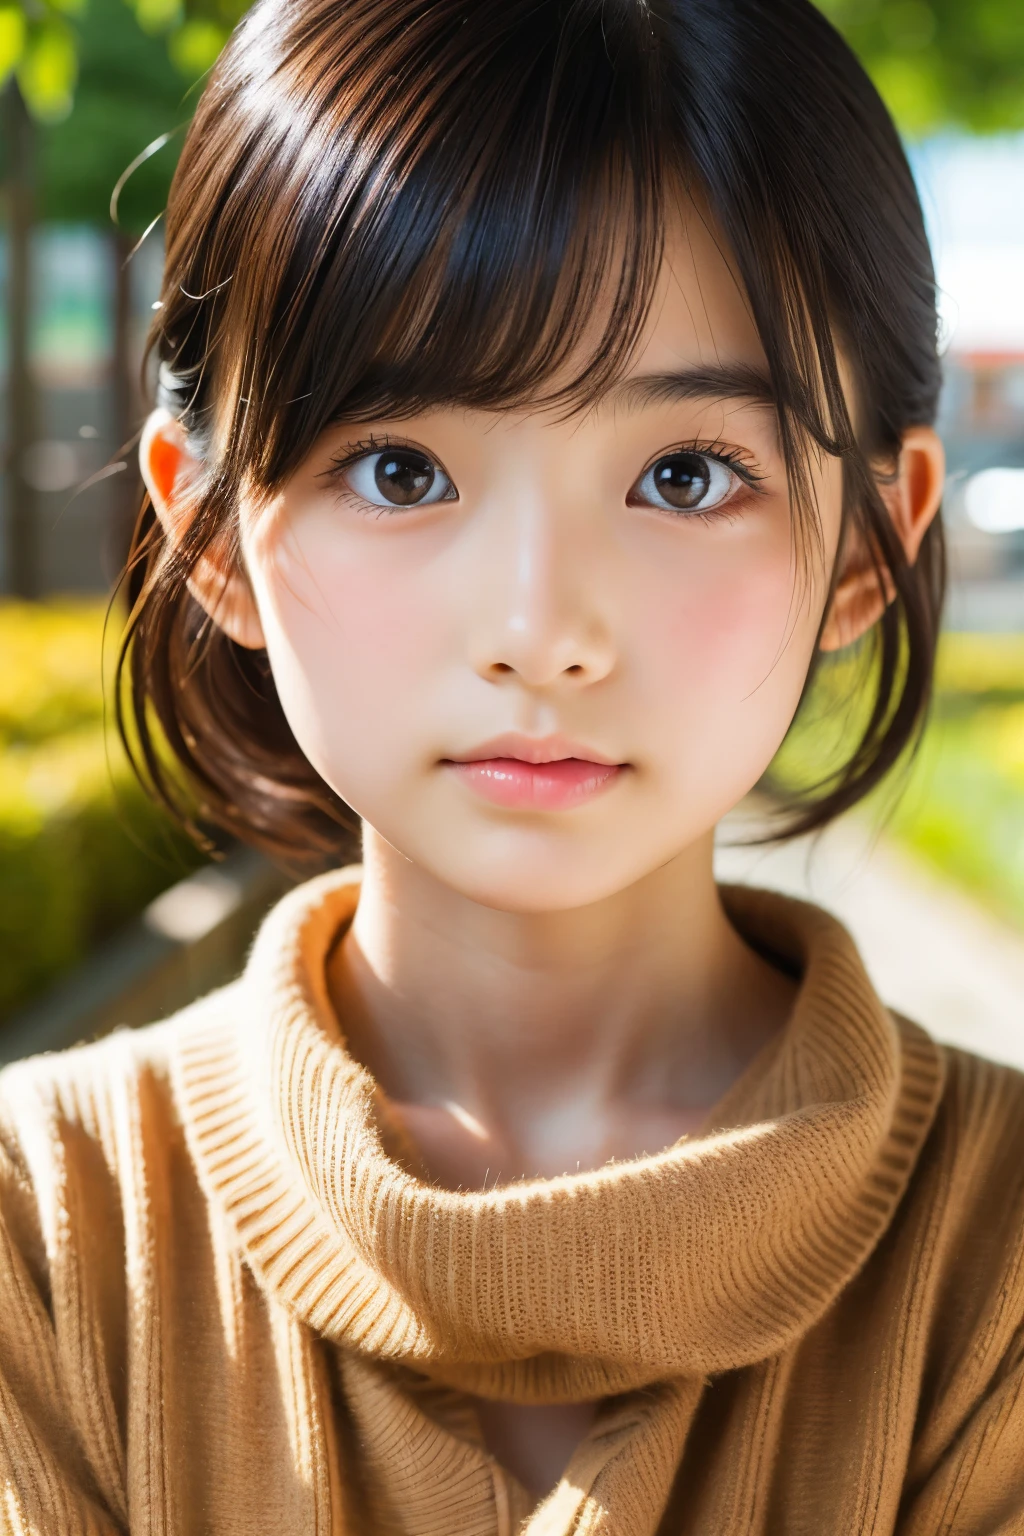 (美丽的 14 岁日本女性), 可爱的脸孔, (深雕的面容:0.7), (雀斑:0.6), 柔光,健康白皙的肌肤, 害羞的, 鲍勃, (严肃的表情), (明亮的眼睛), 薄的